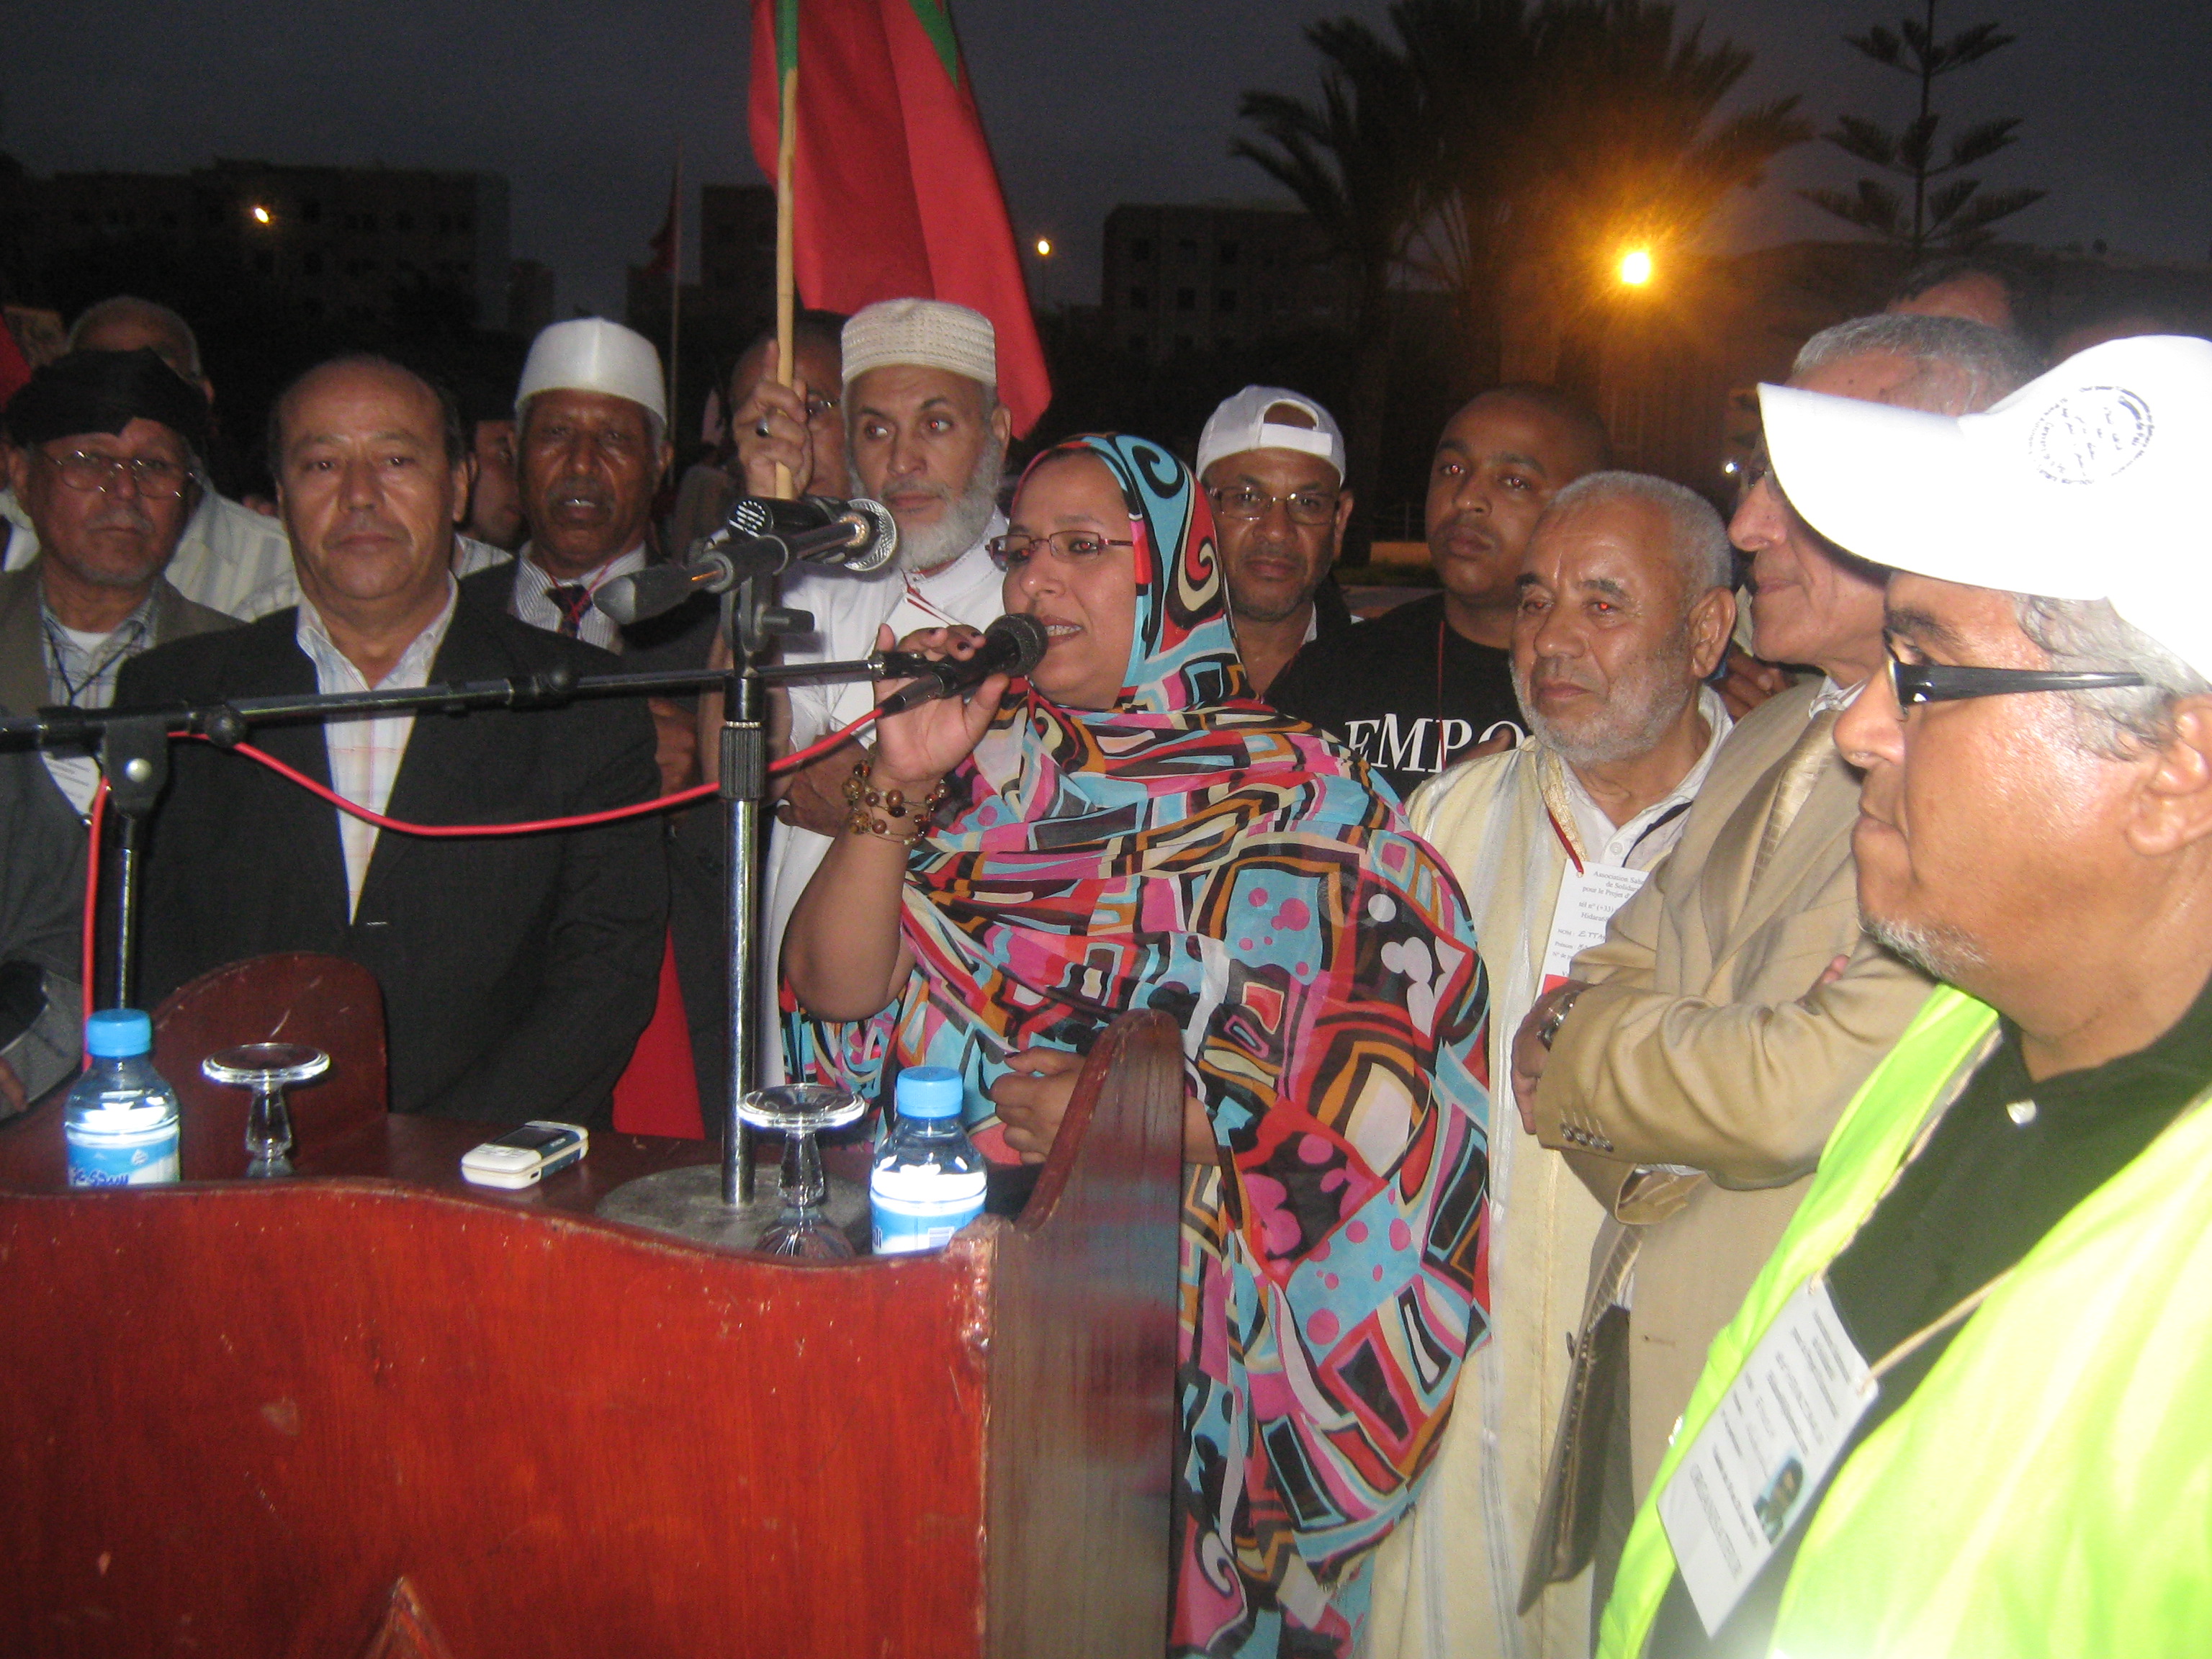 قافلة السلام لتأييد الحكم الذاتي بالأقاليم الجنوبية المغربية تحل بتيزنيت +صور 1006170925521101736243085